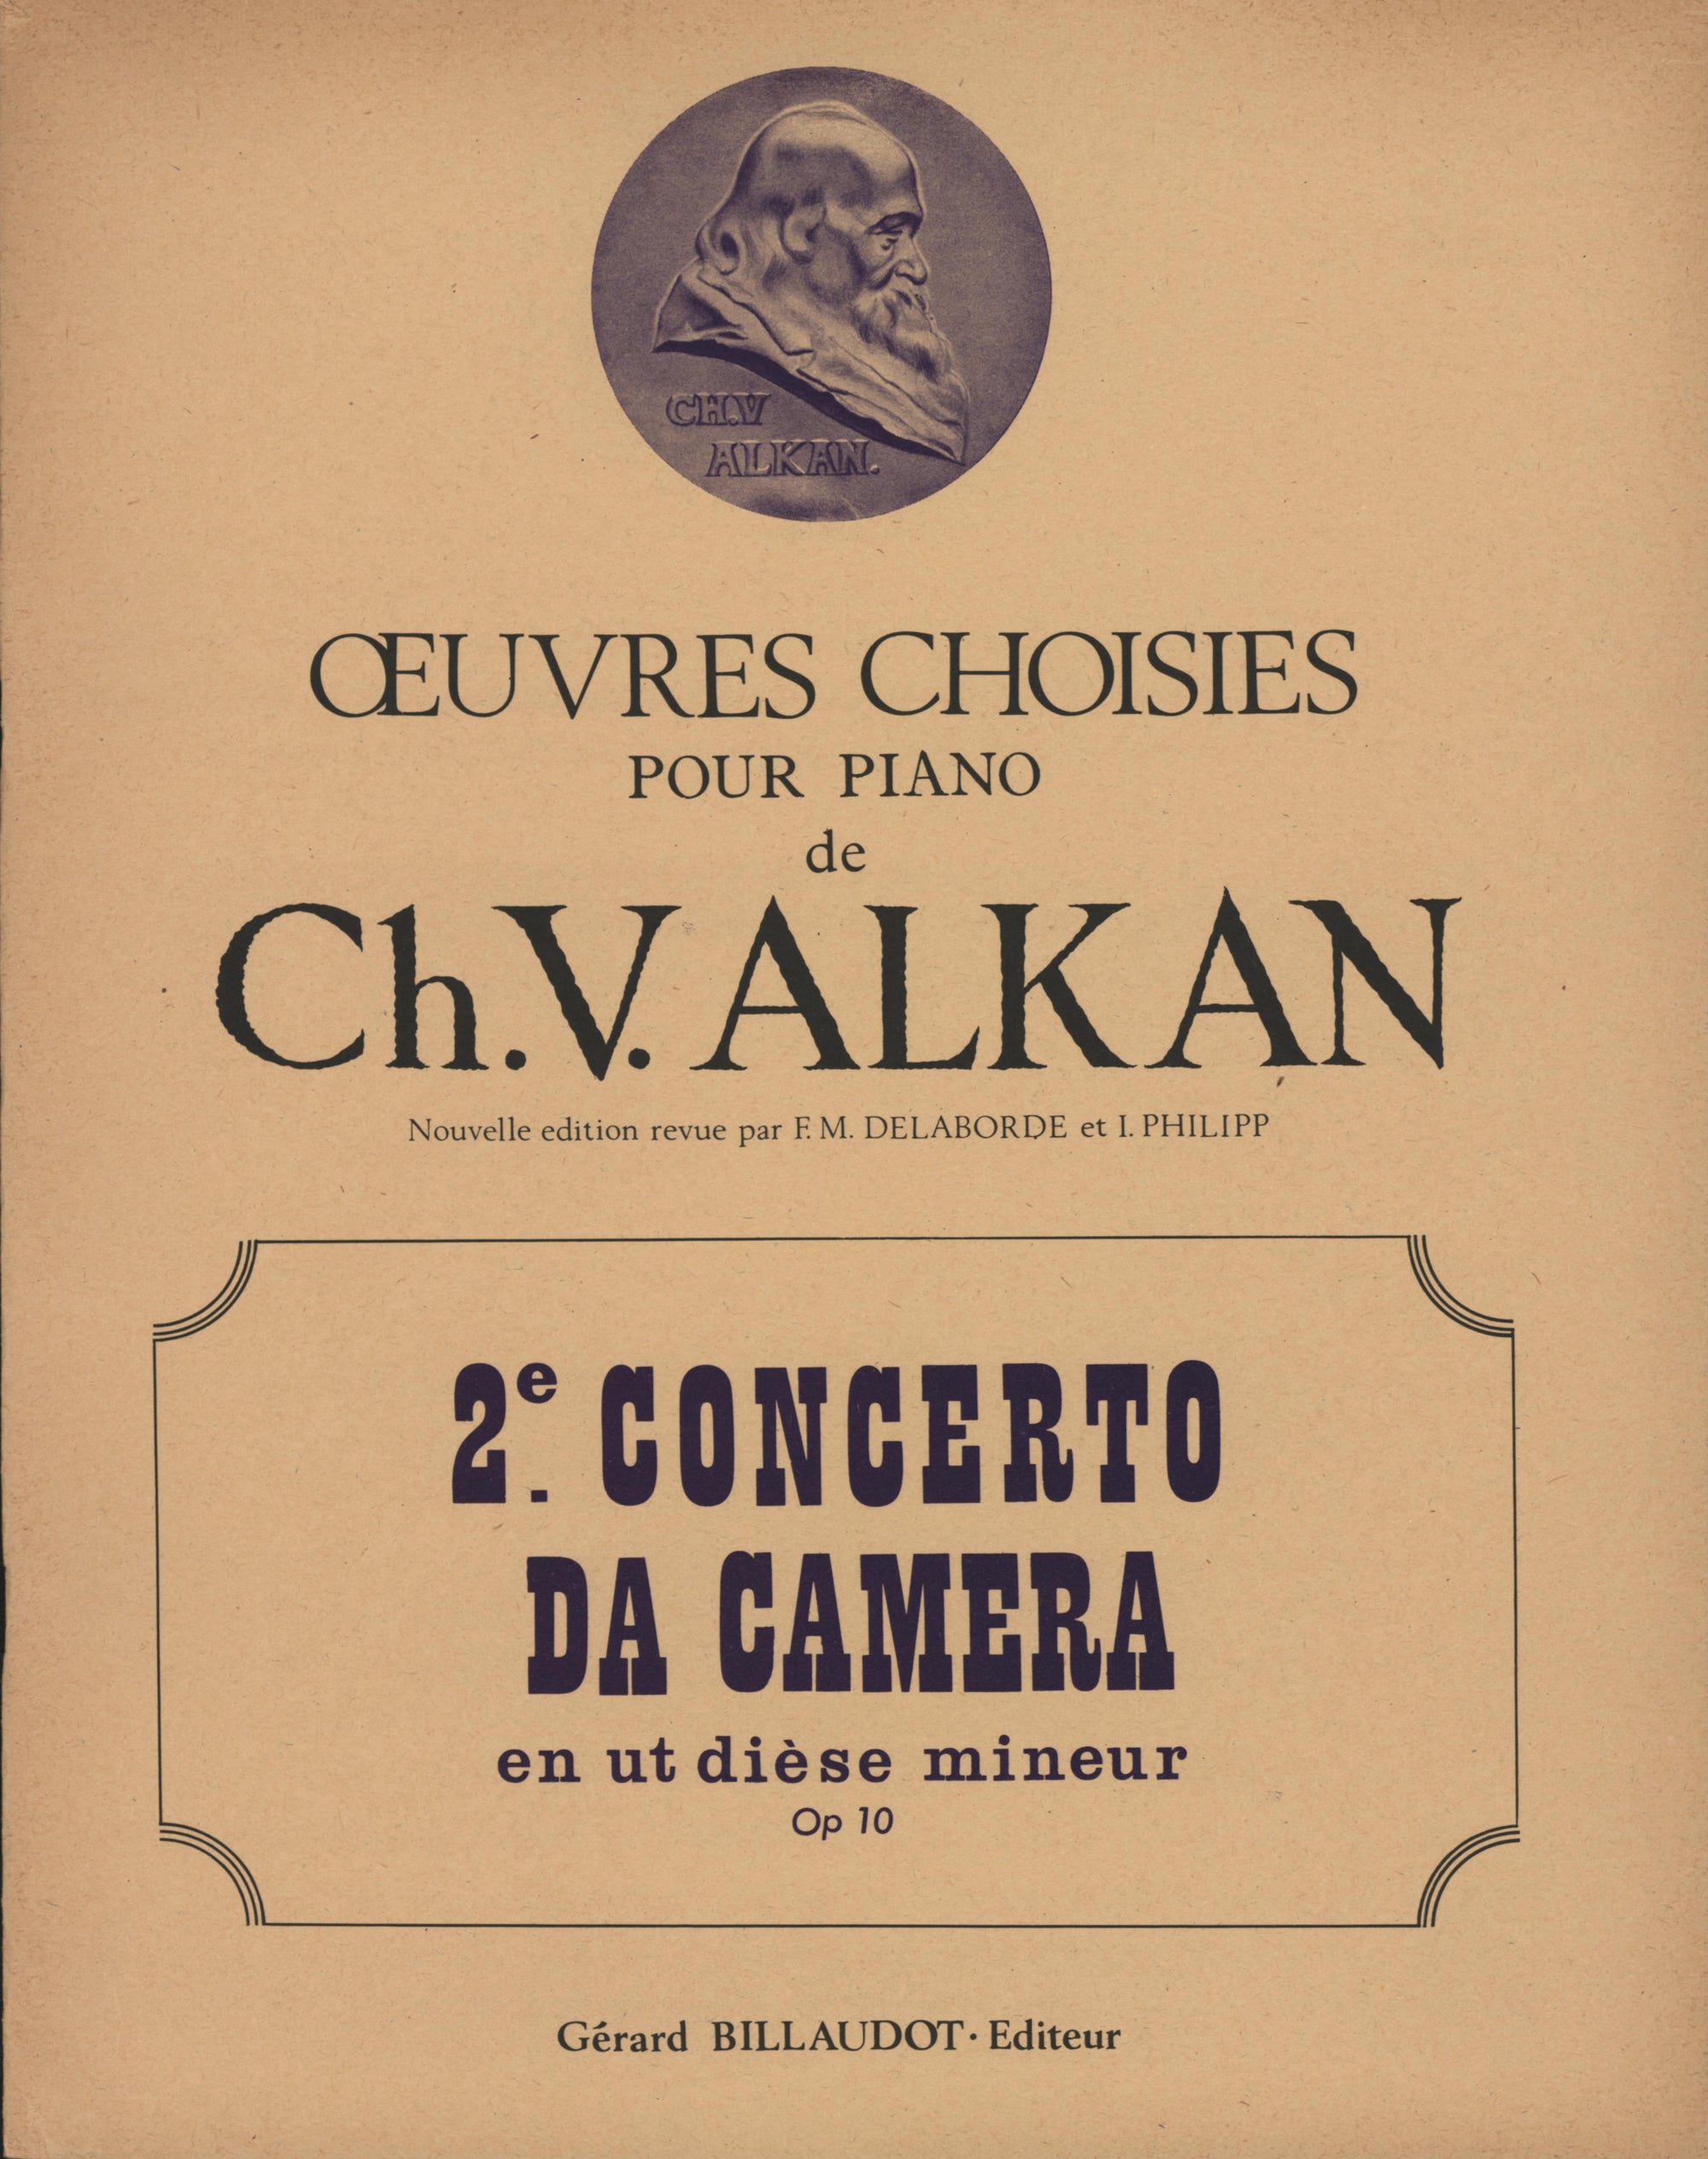 Alkan: Concerto da Camera in C-sharp Minor, Op. 10, No. 2 (arr. for solo piano)